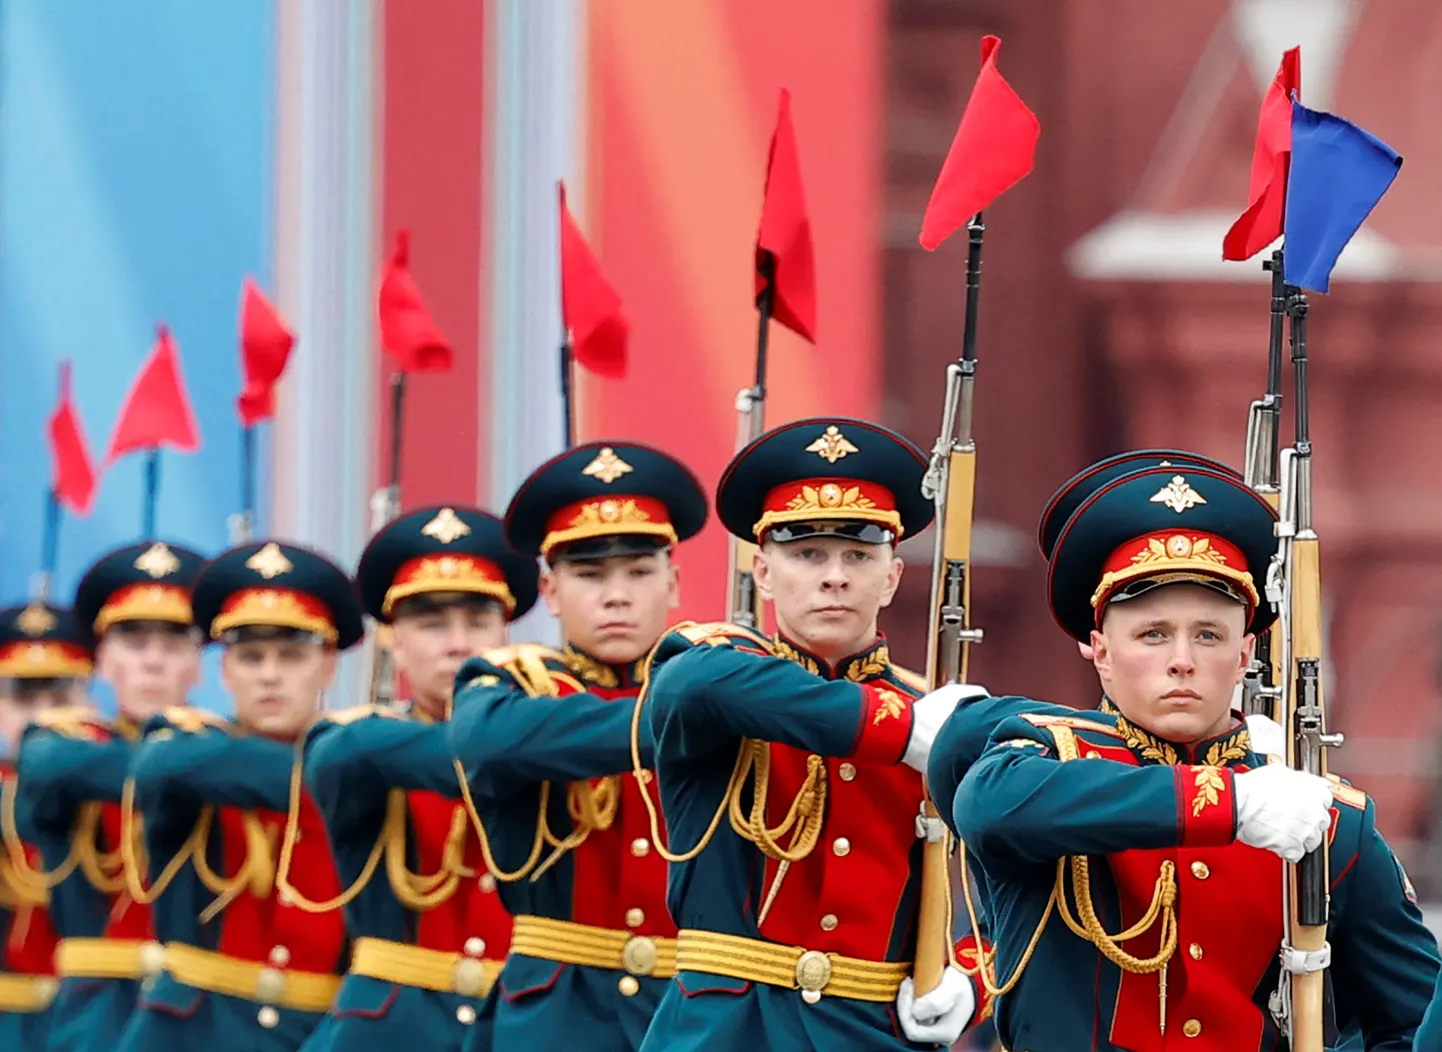 Vene auvahtkonna liikmed 9. mai sõjaväeparaadi proovis Moskvas Punasel väljakul.